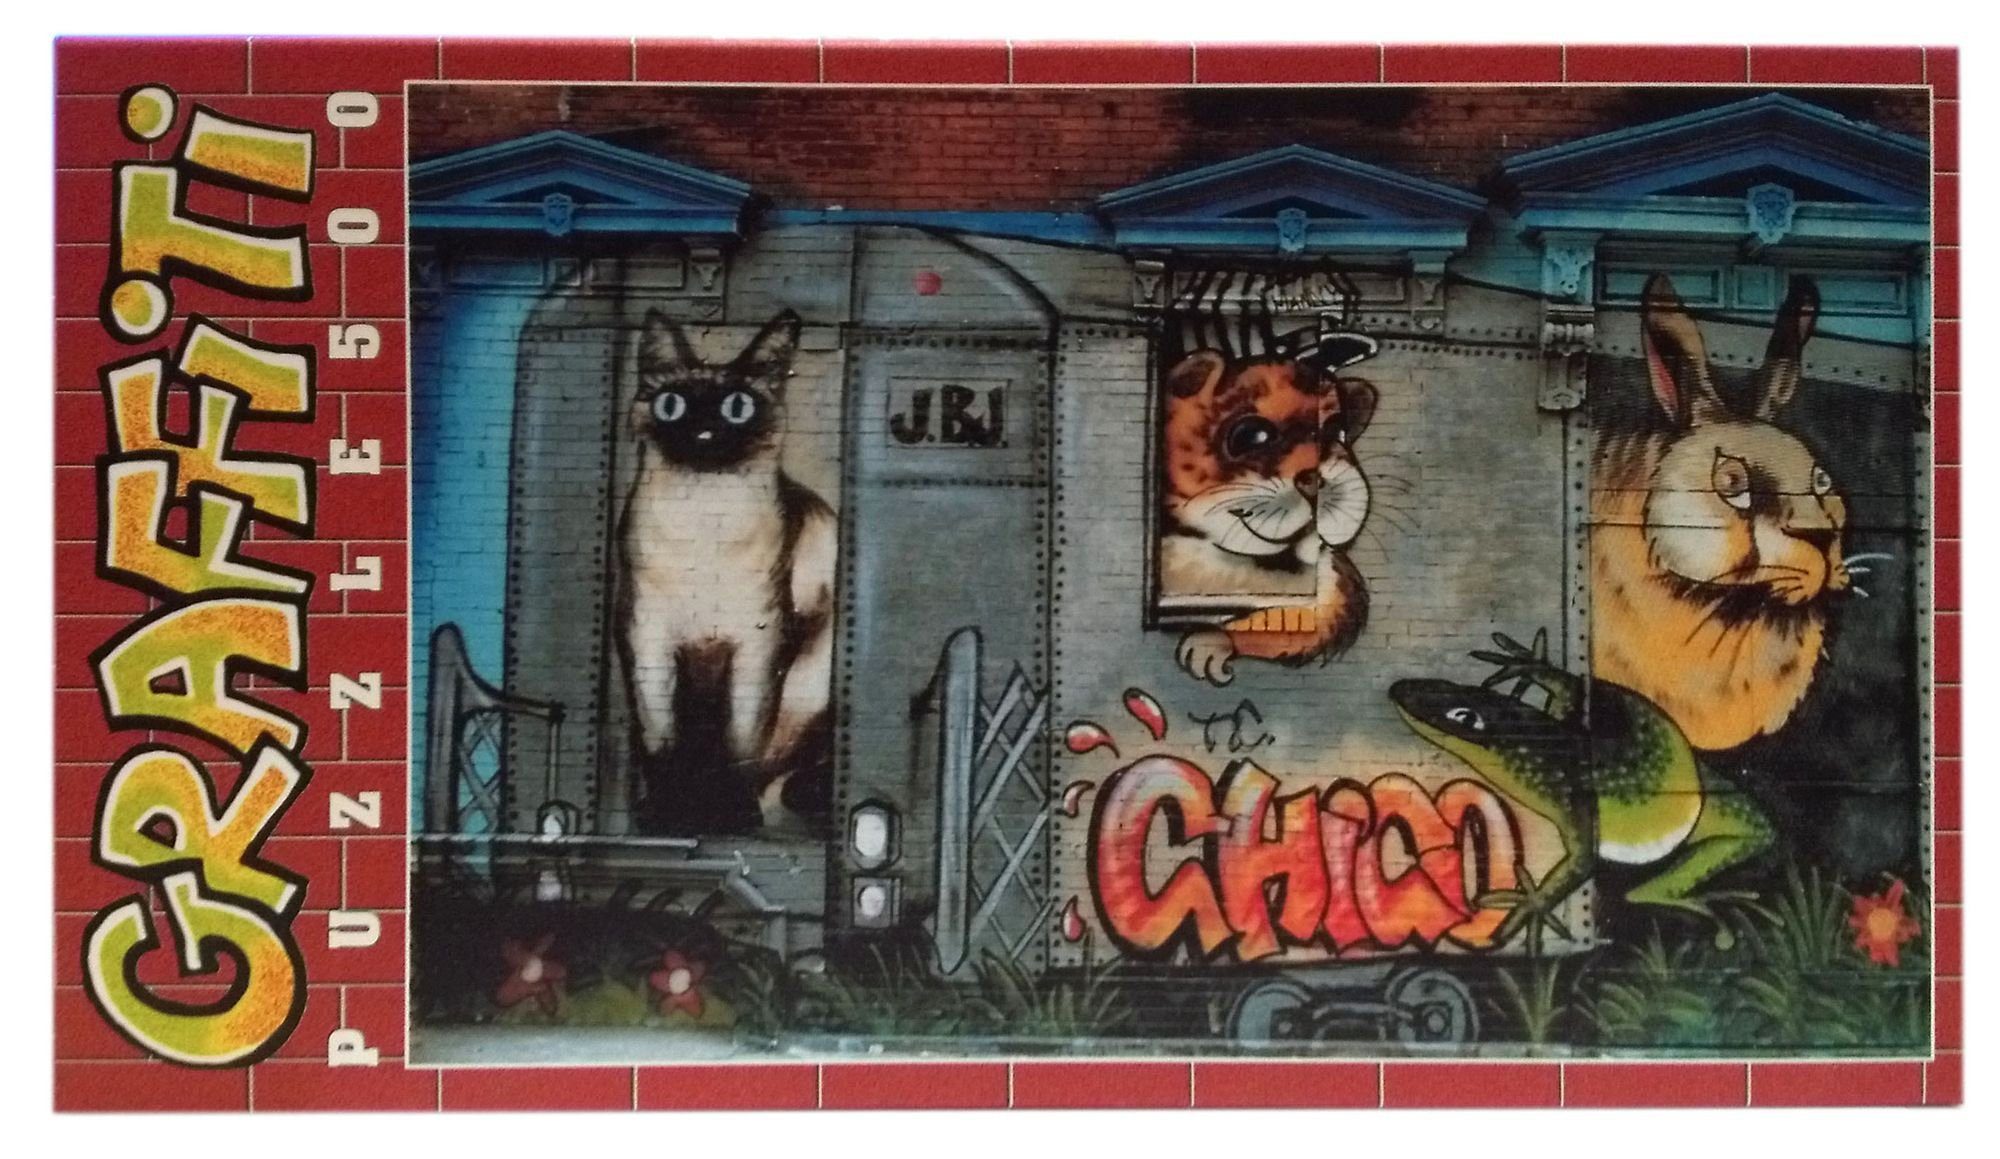 Clementoni® Puzzle Clementoni Graffiti Puzzle 500 Teile "Chico", 500 Puzzleteile